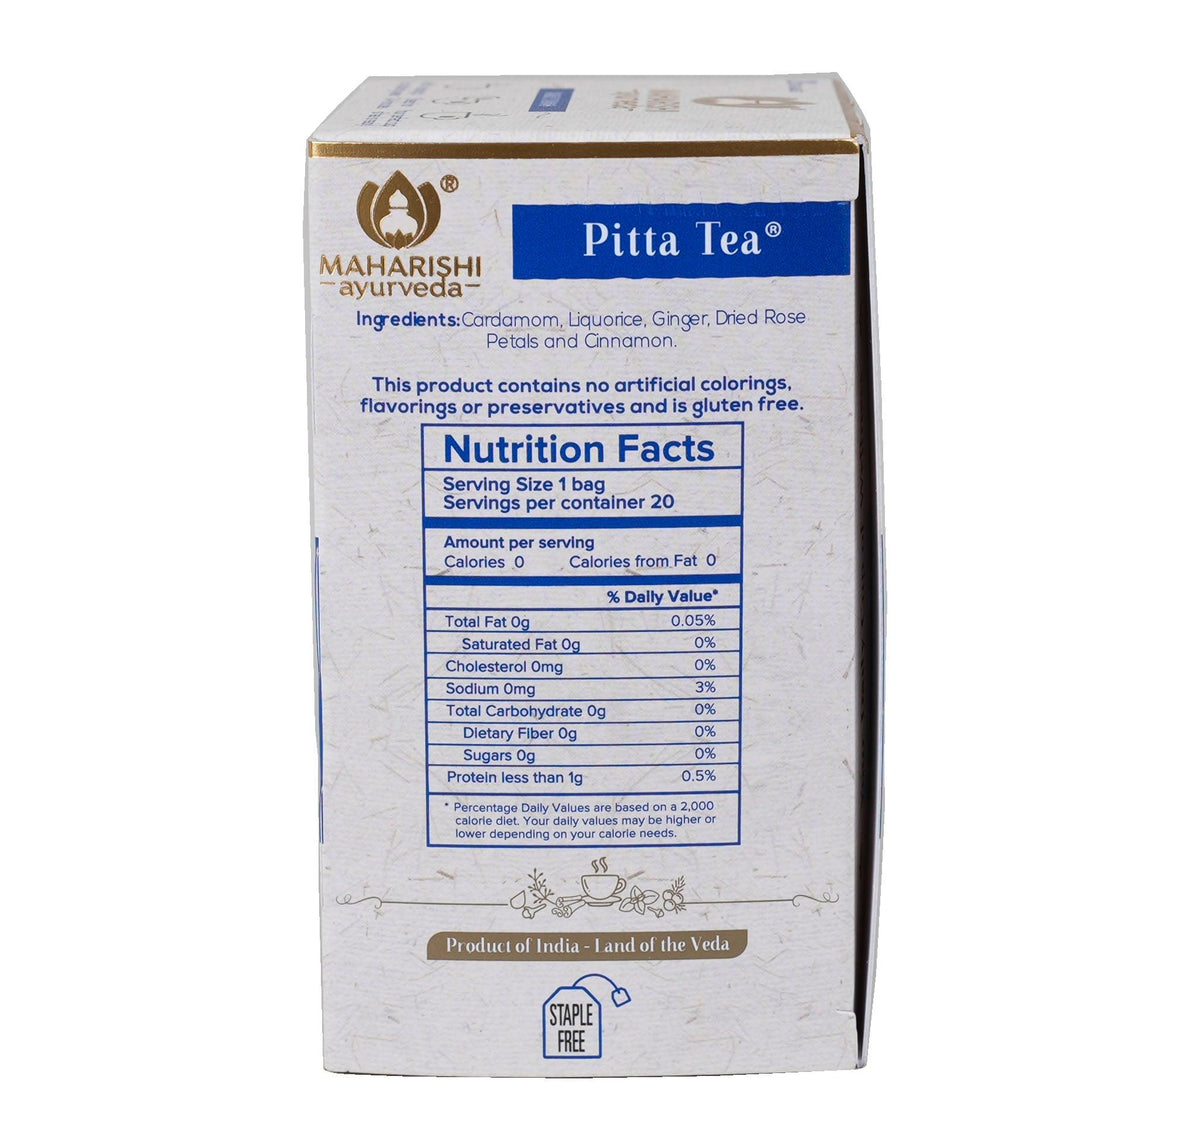 Pitta Tea 20 tea bags - Holy Sanity 